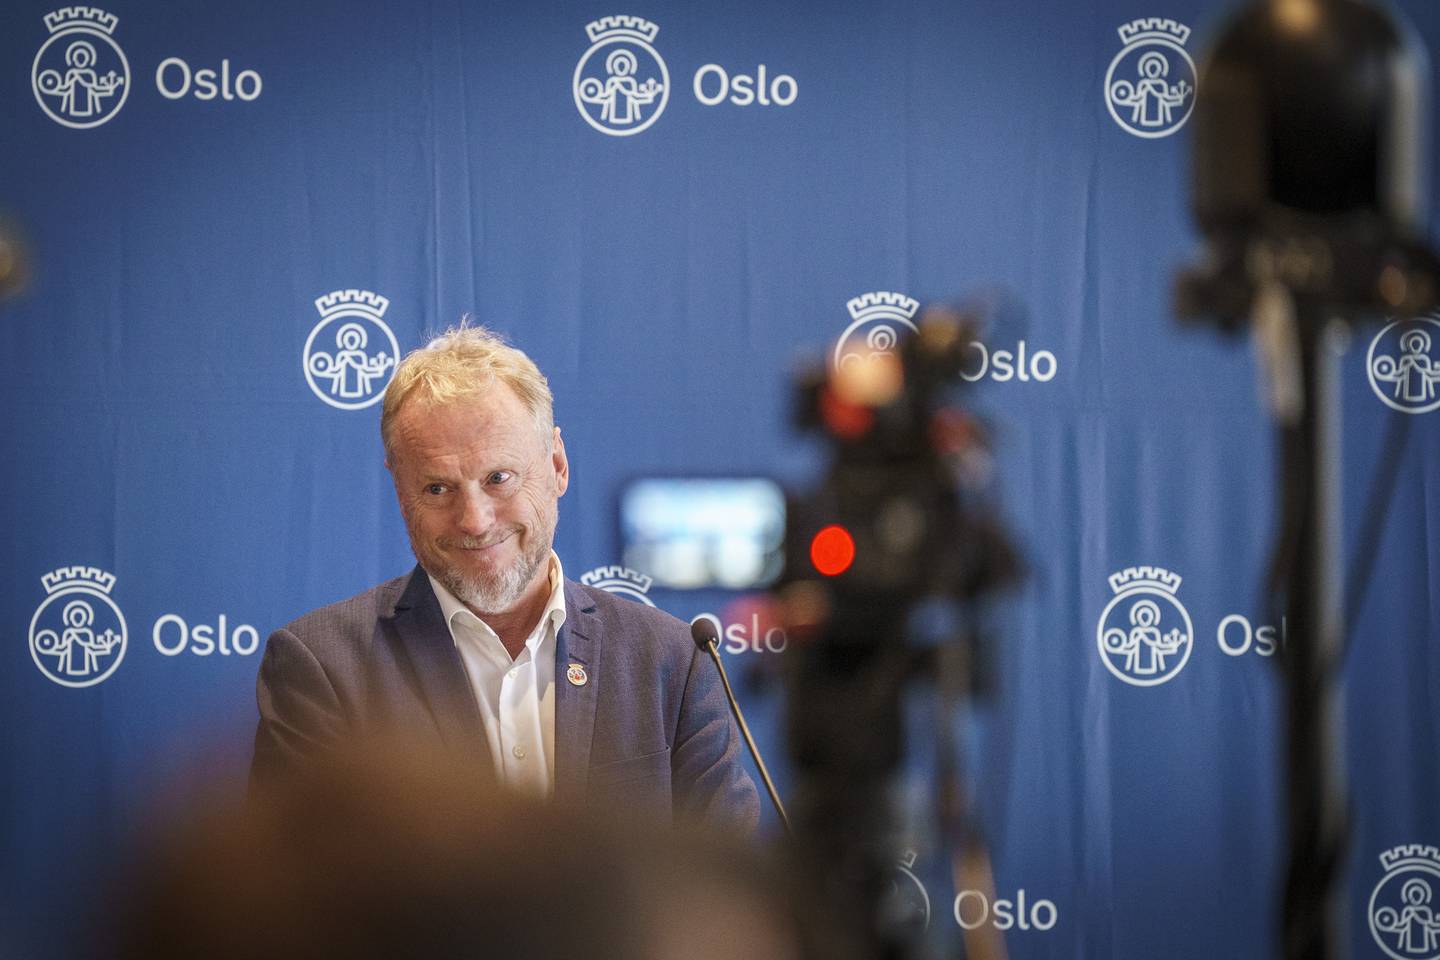 Byrådsleder Raymond Johansen da Oslo-budsjettet ble lagt fram i Rådhuset 21. september. Kort tid etterpå ble de pålagt  1 milliard i kraftskatt fra regjeringen. Byrådslederen gikk hardt ut, men godtok tilslutt skatten - men krever at forsvinner til neste år.